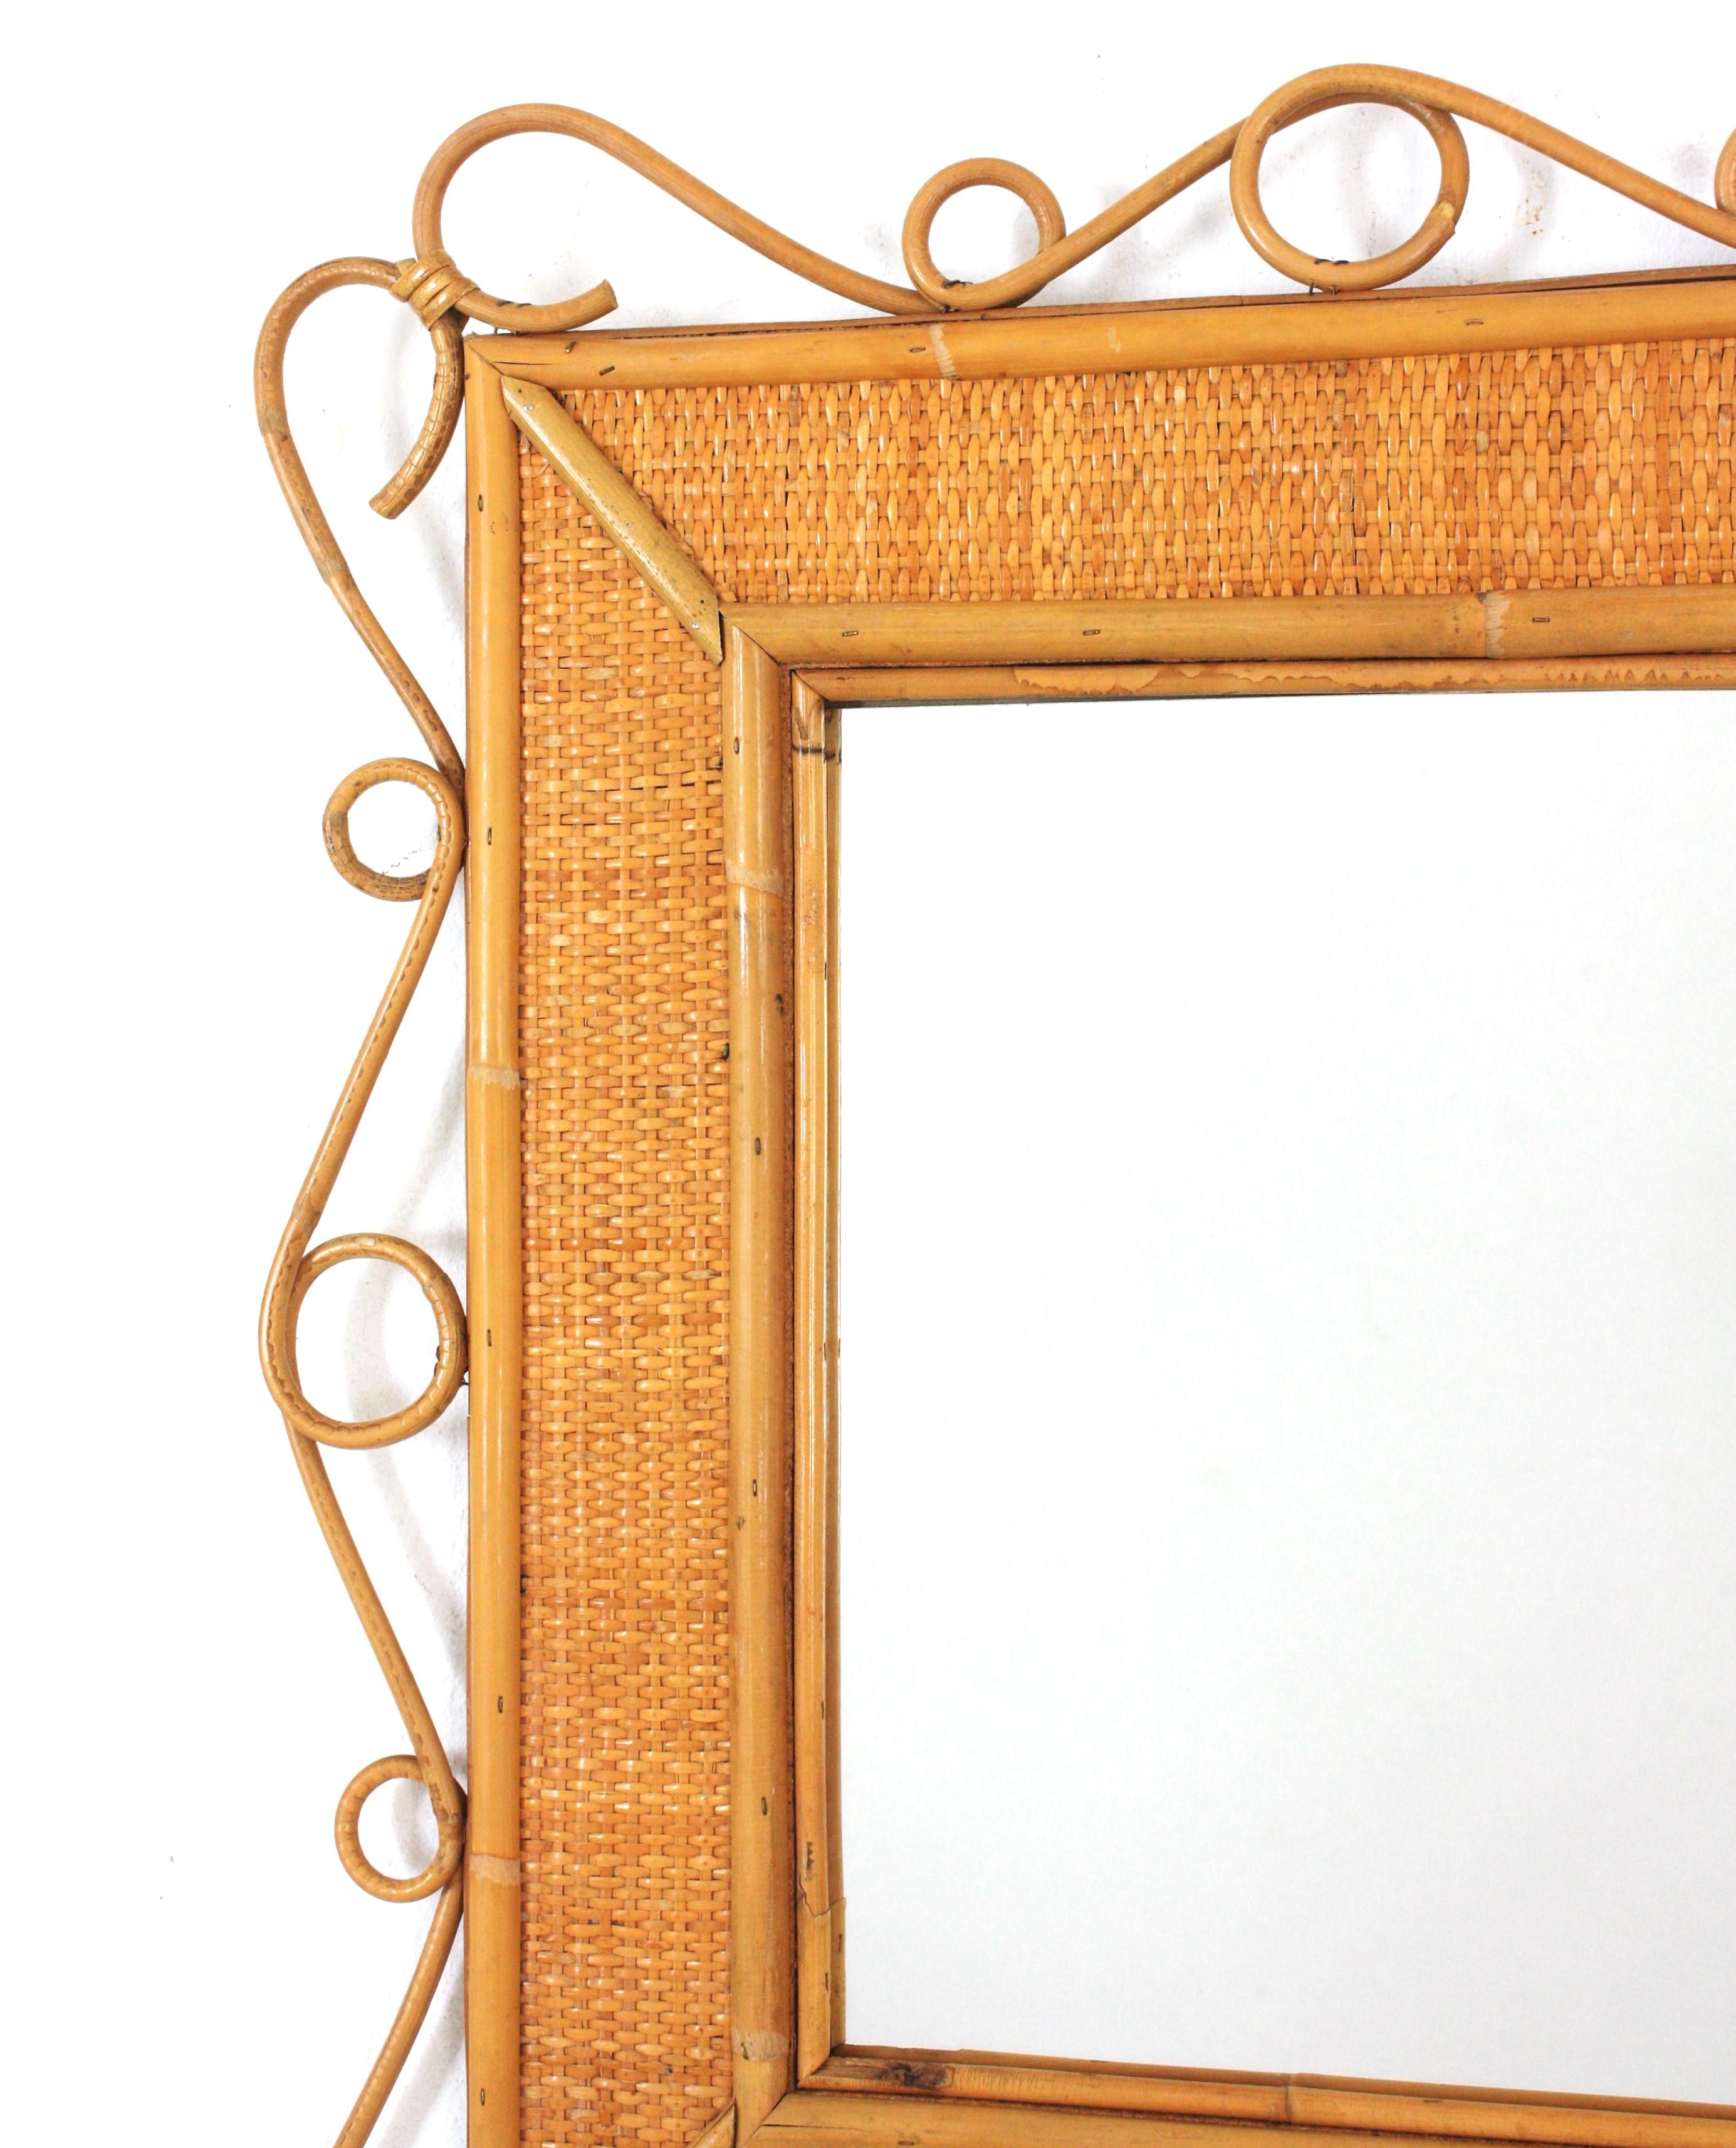 Bamboo Rattan Rectangular Mirror with Scroll Motif, Franco Albini Style